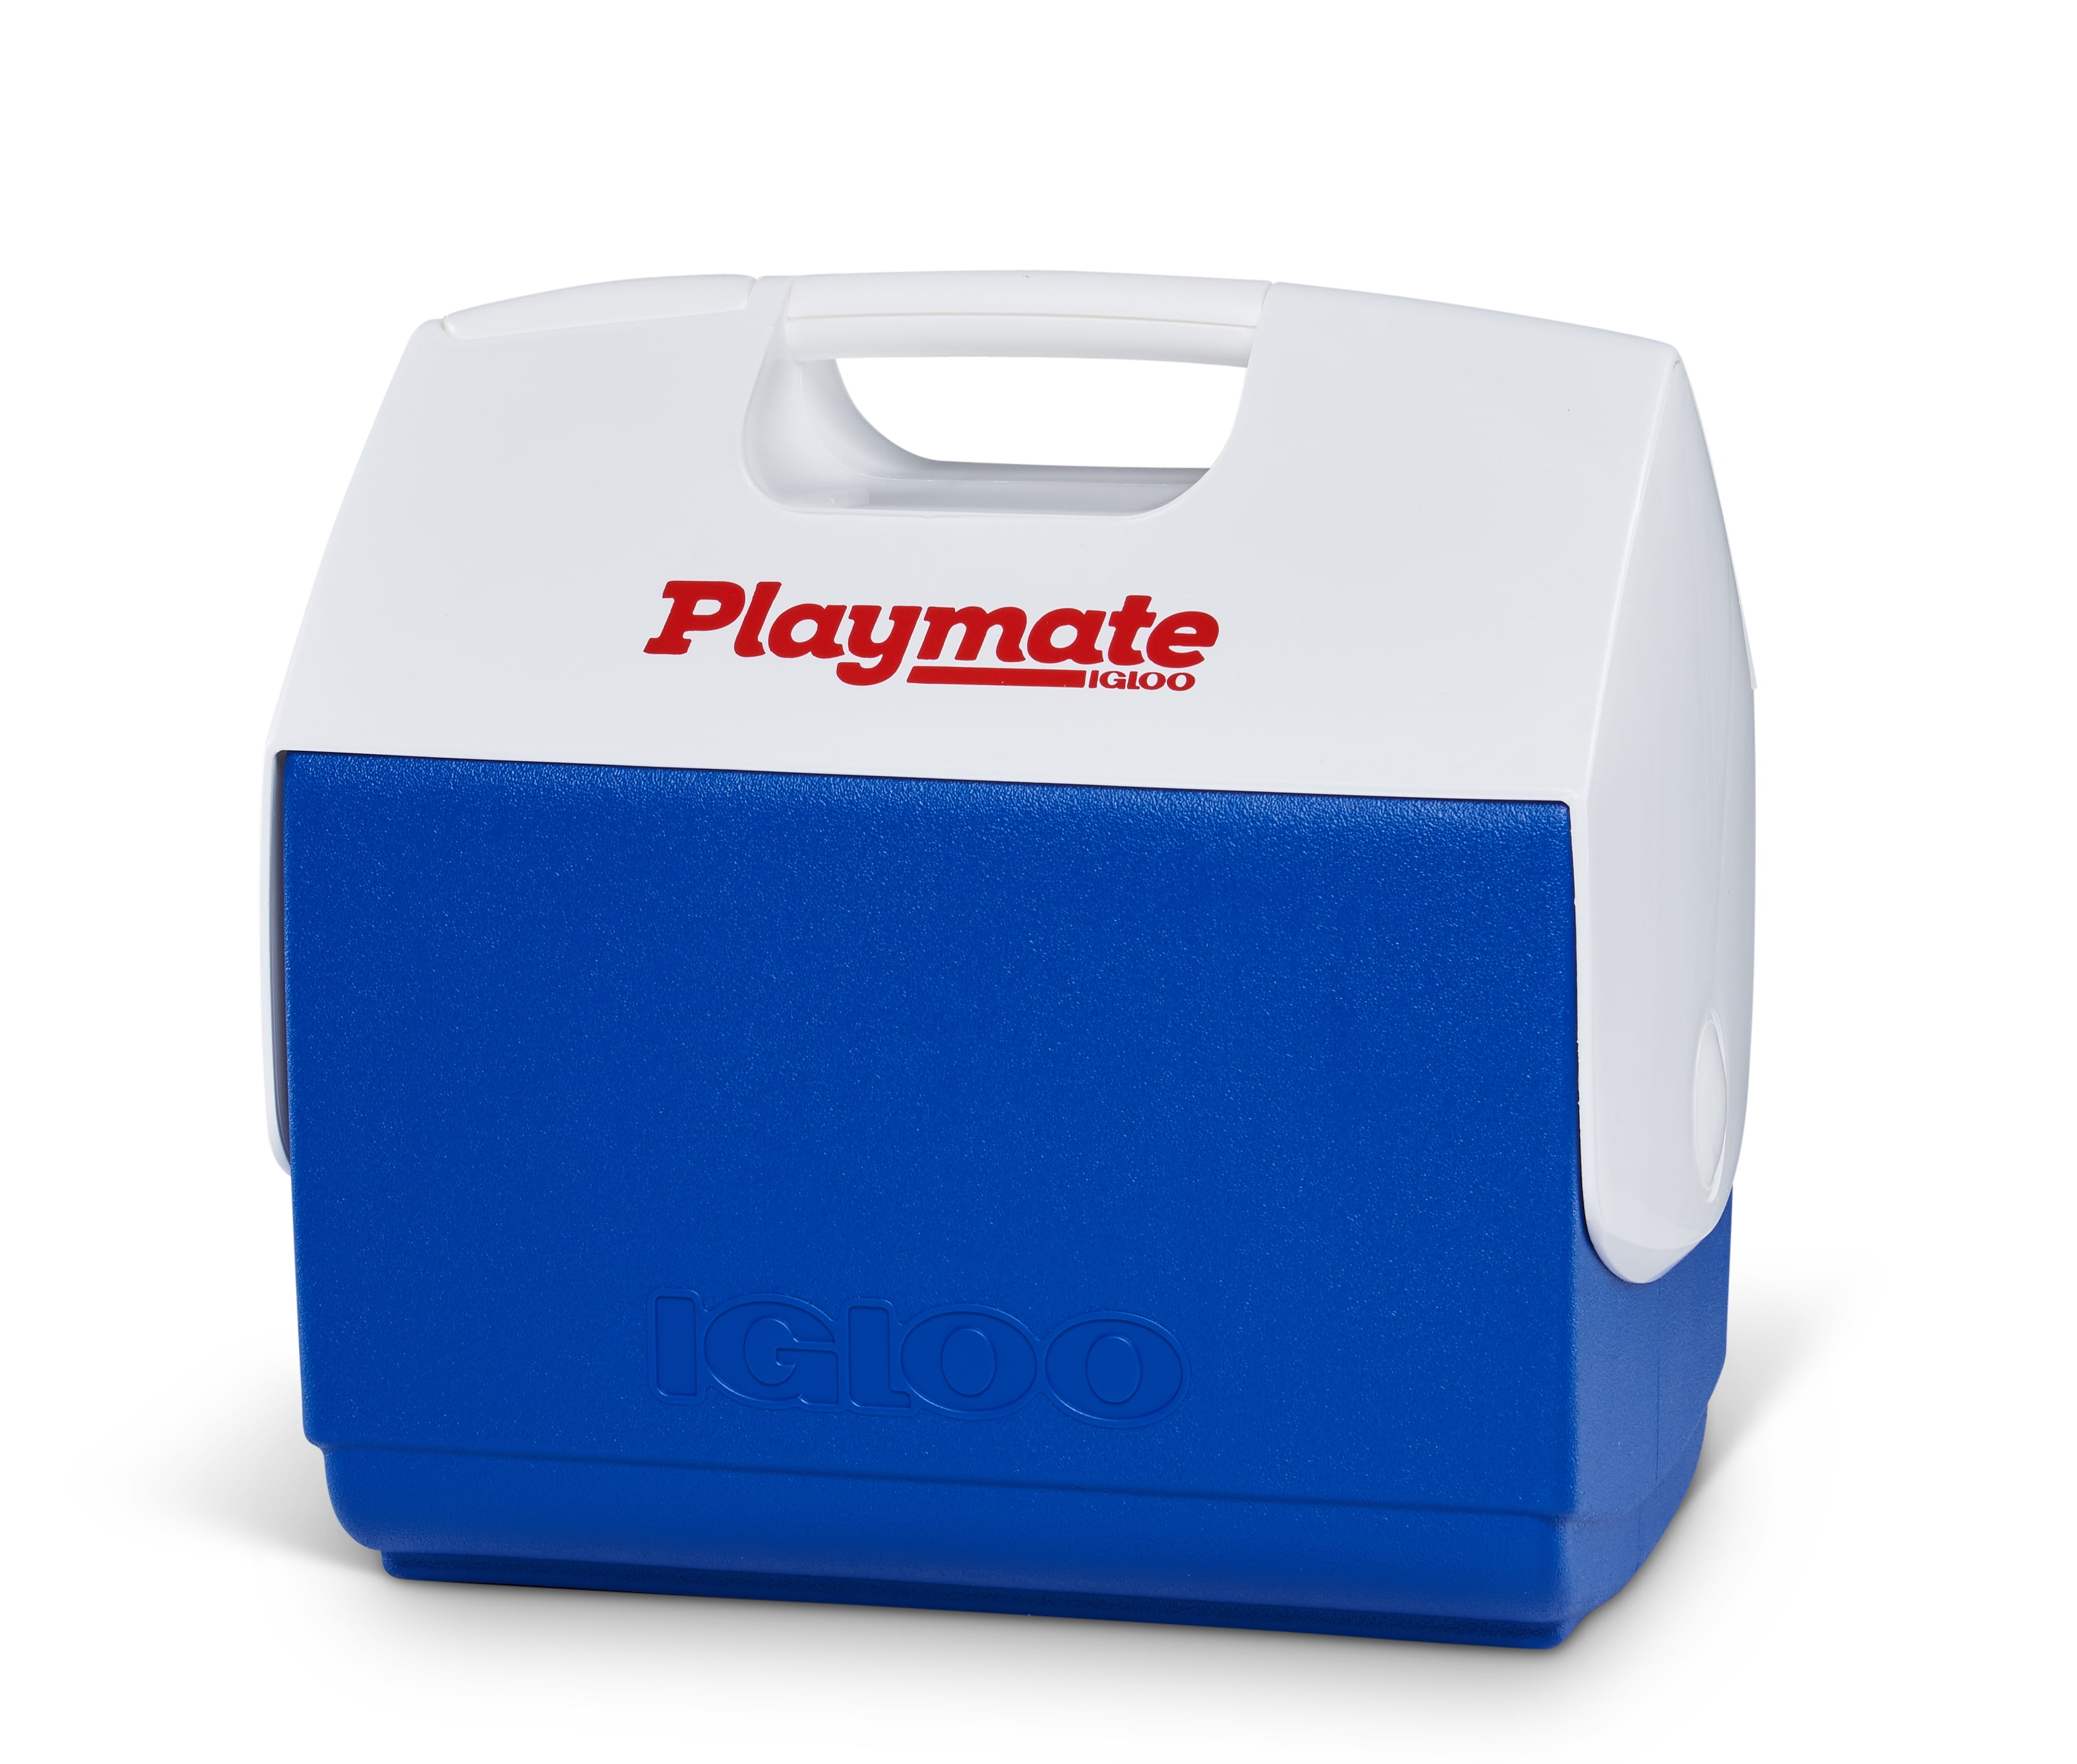 16-Quart IGLOO Playmate Elite Cooler Red cooler